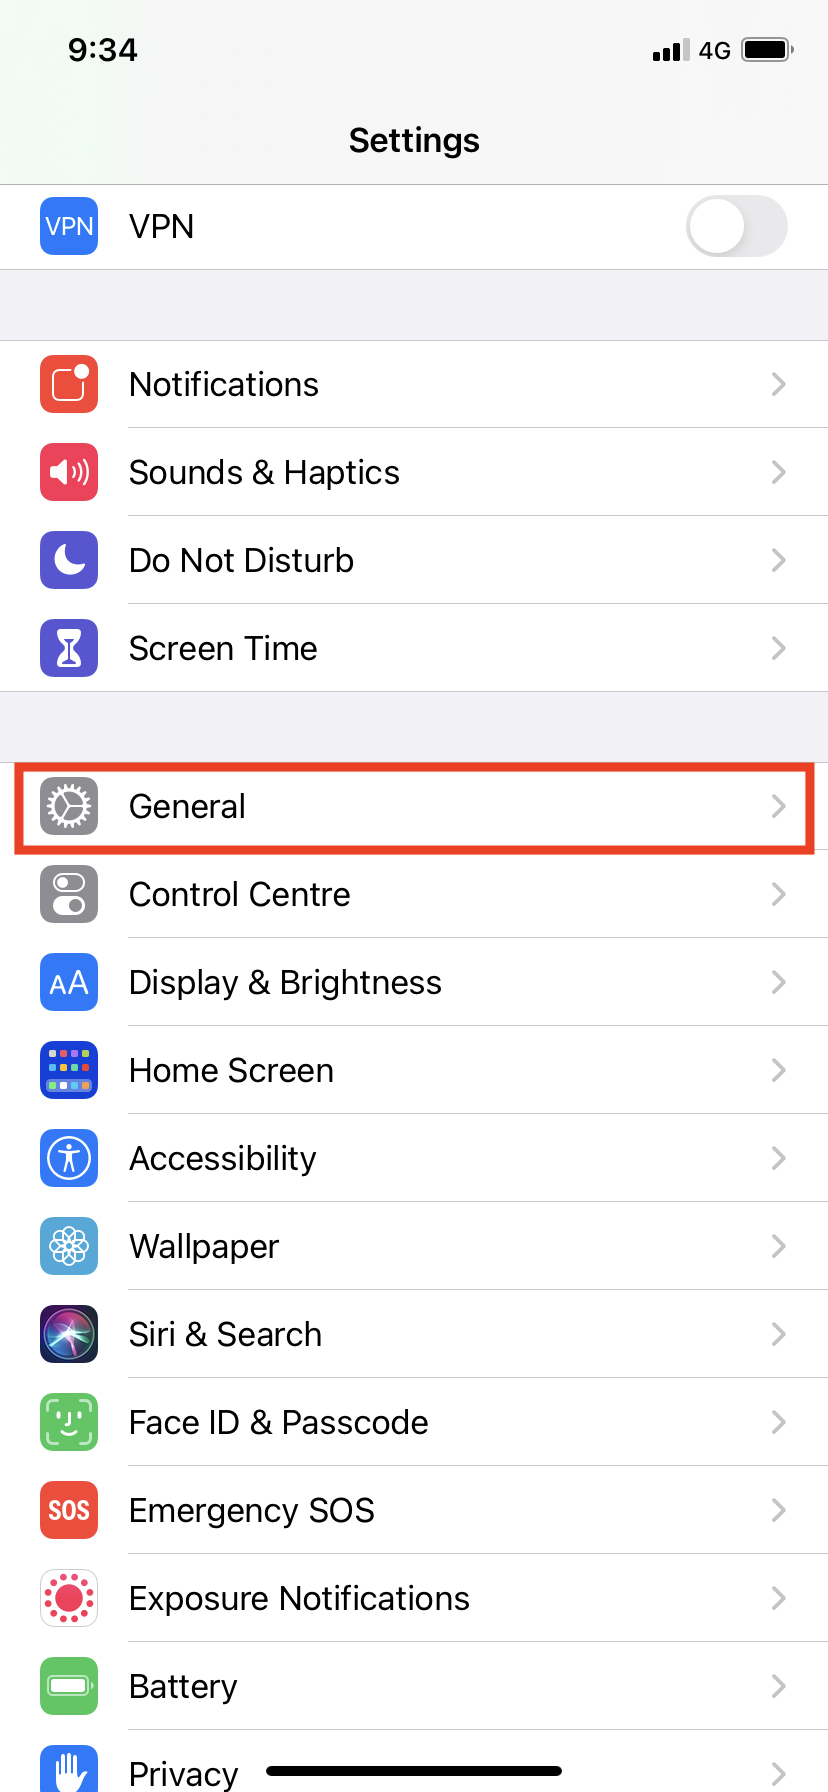 How do I use VPN on Safari iPhone?